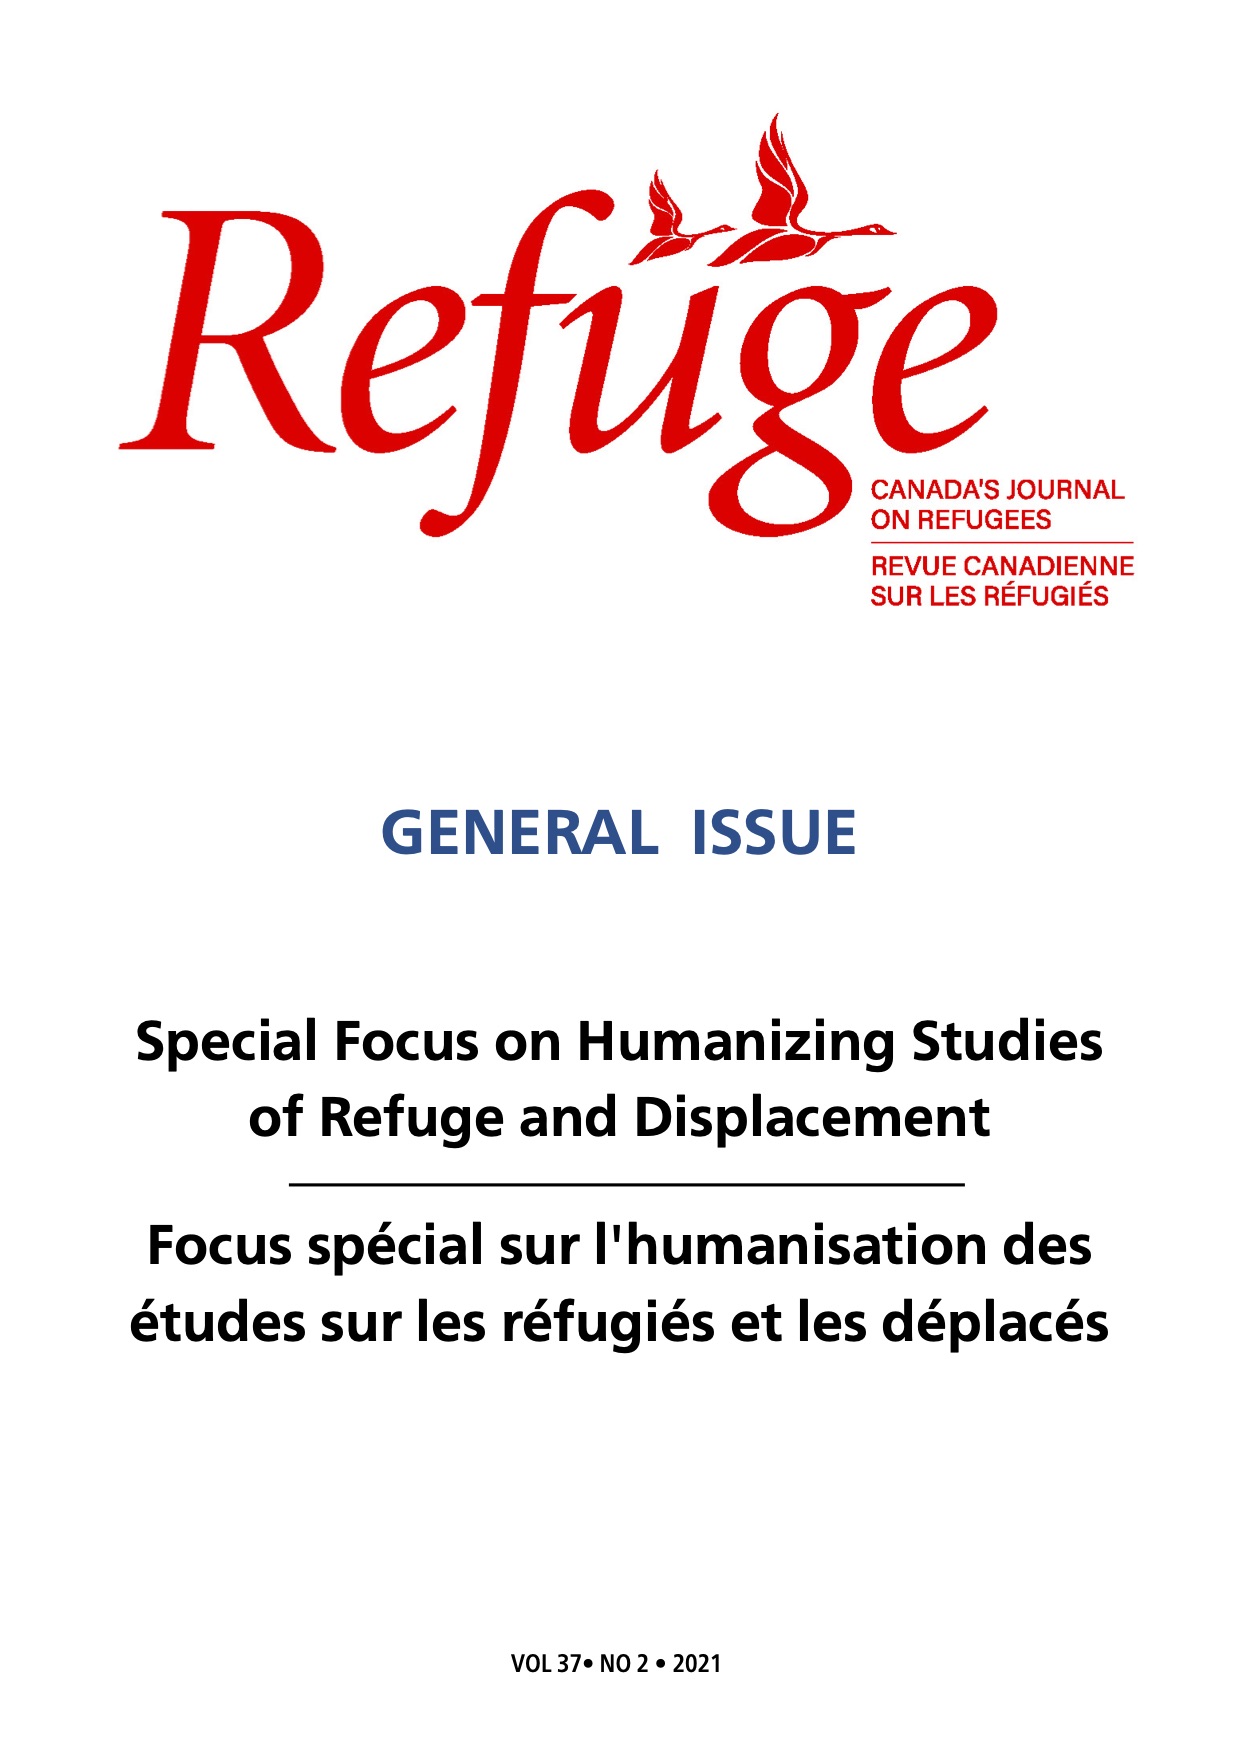 					Afficher Vol. 37 No. 2 (2021): Numéro général avec un accent particulier sur l'humanisation des études sur les réfugiés et les déplacés.
				